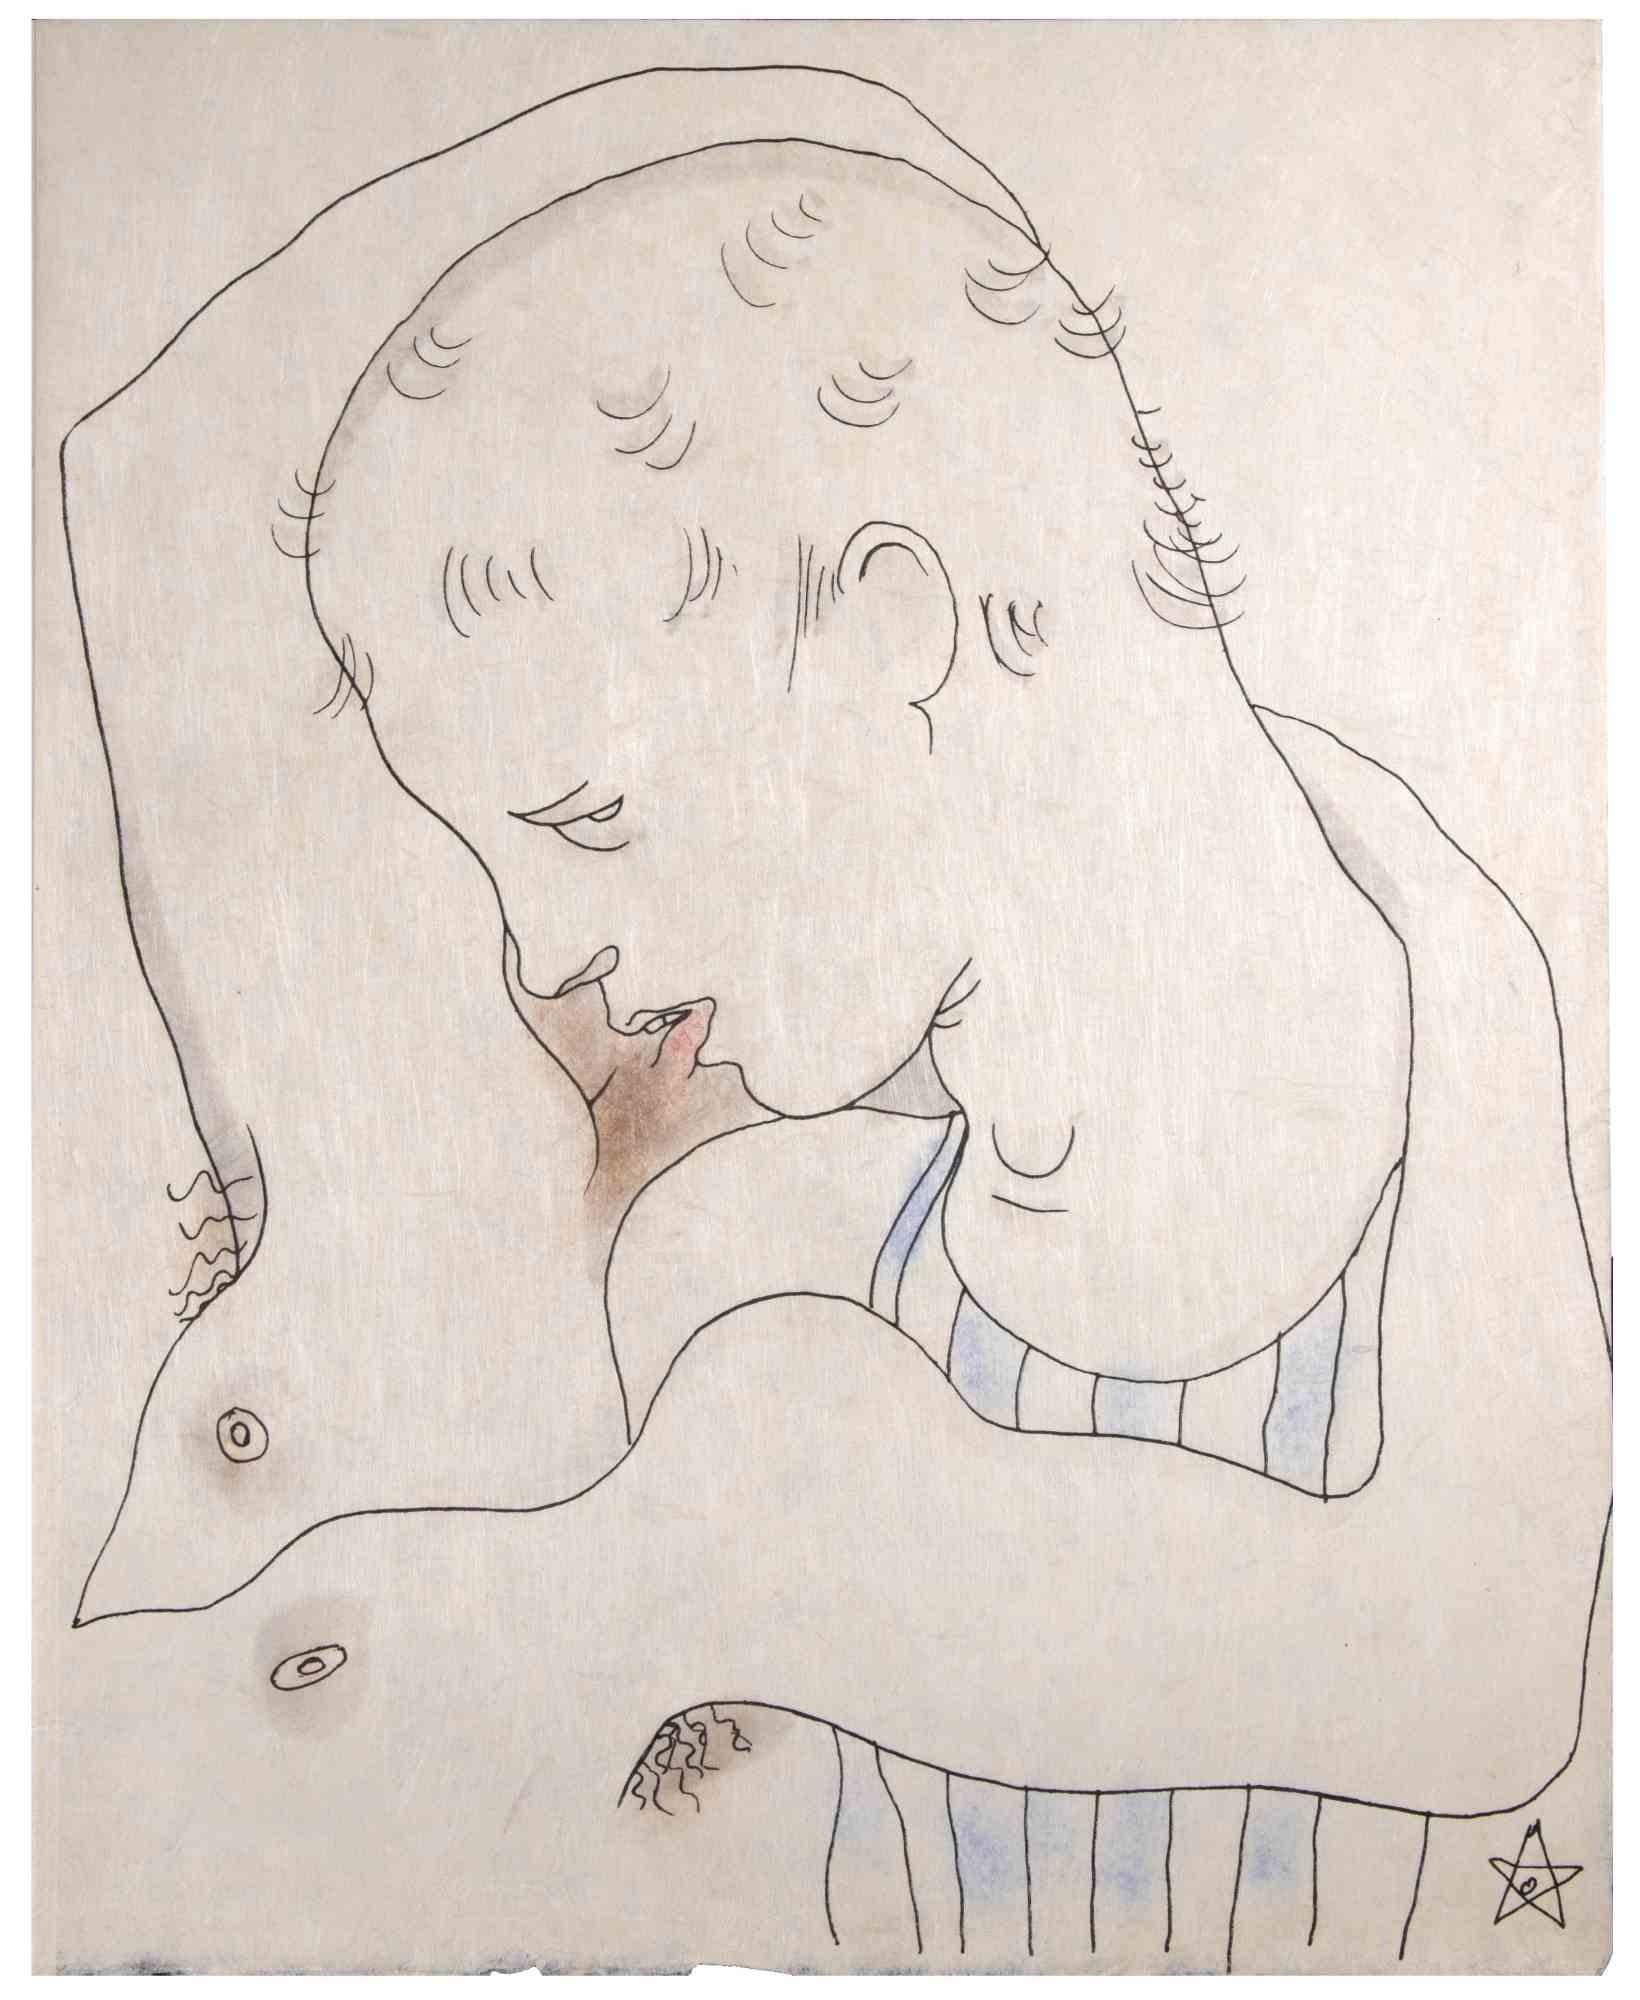 Erotic Scene ist eine kolorierte Lithographie von Jean Cocteau (1889 -1963) aus dem Jahr 1930. 

Französischer Zeichner, Dichter, Essayist, Dramatiker, Librettist, Filmregisseur.

Nicht unterzeichnet. Sehr guter Zustand.

Jean Cocteau, ein